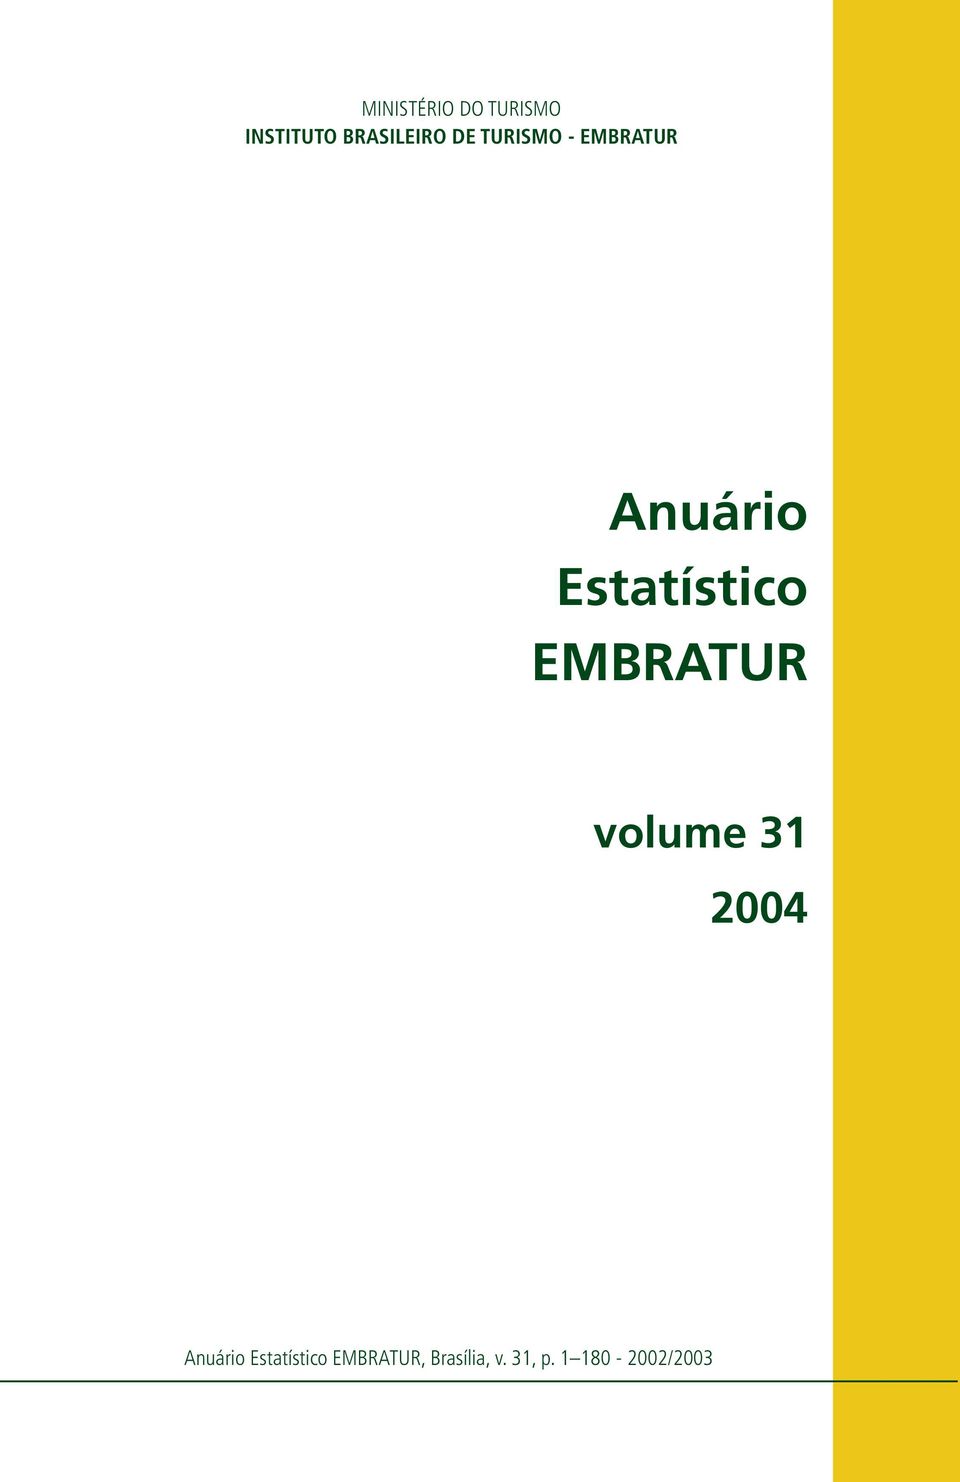 EMBRATUR volume 31 2004 Anuário Estatístico